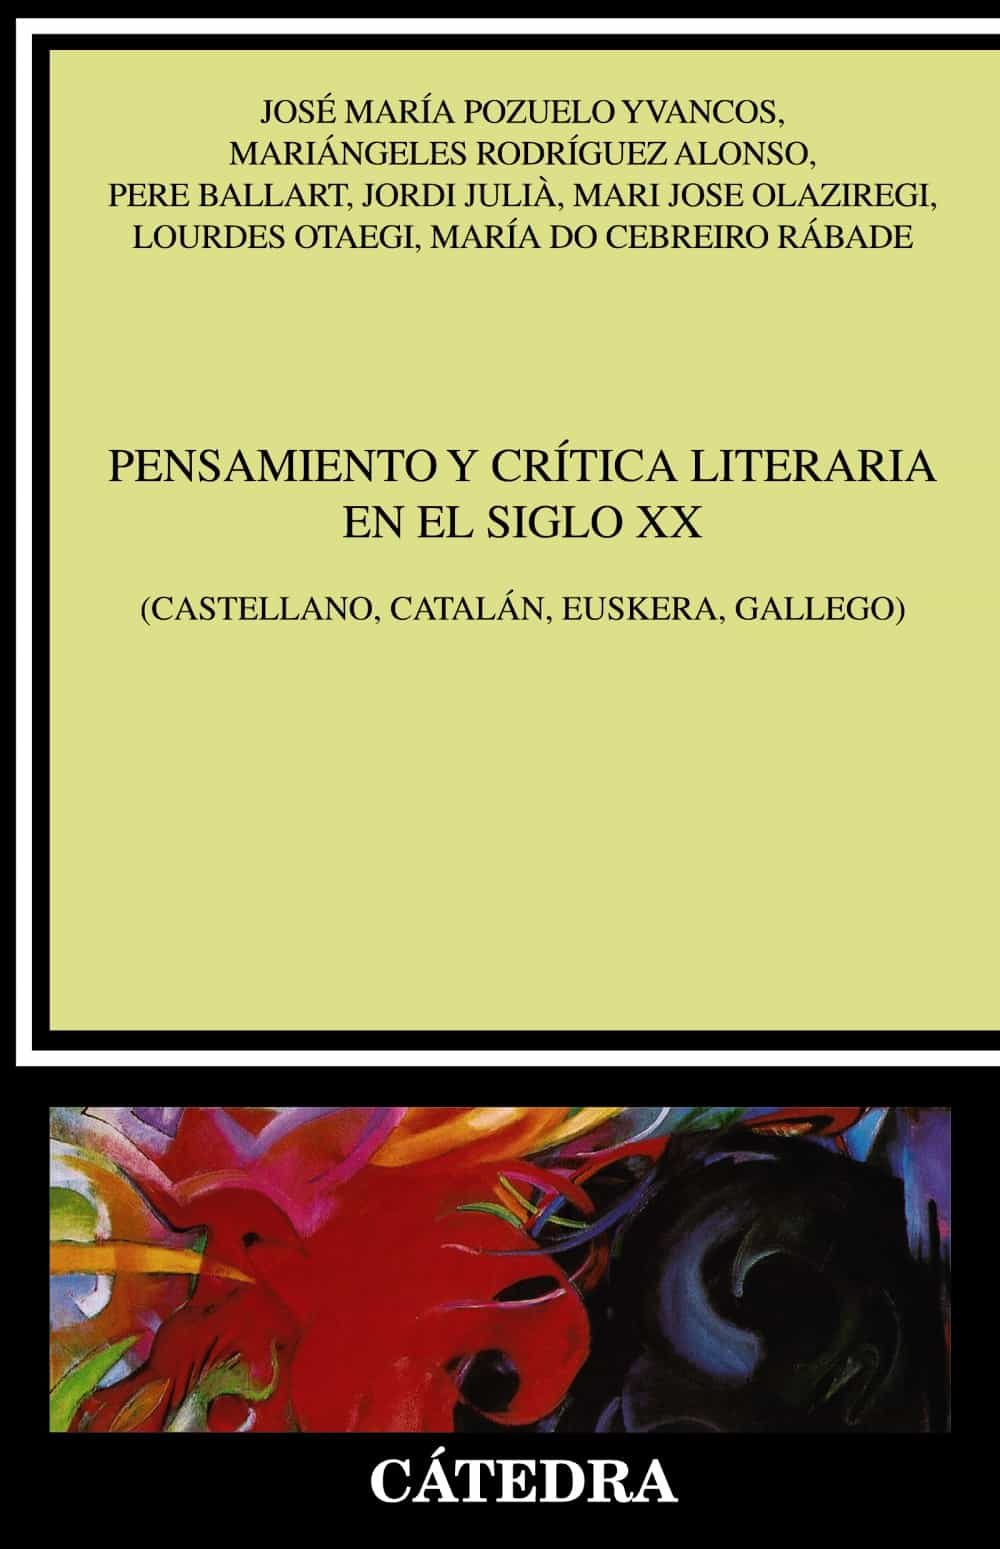 Imagen de portada del libro Pensamiento y crítica literaria en el siglo XX